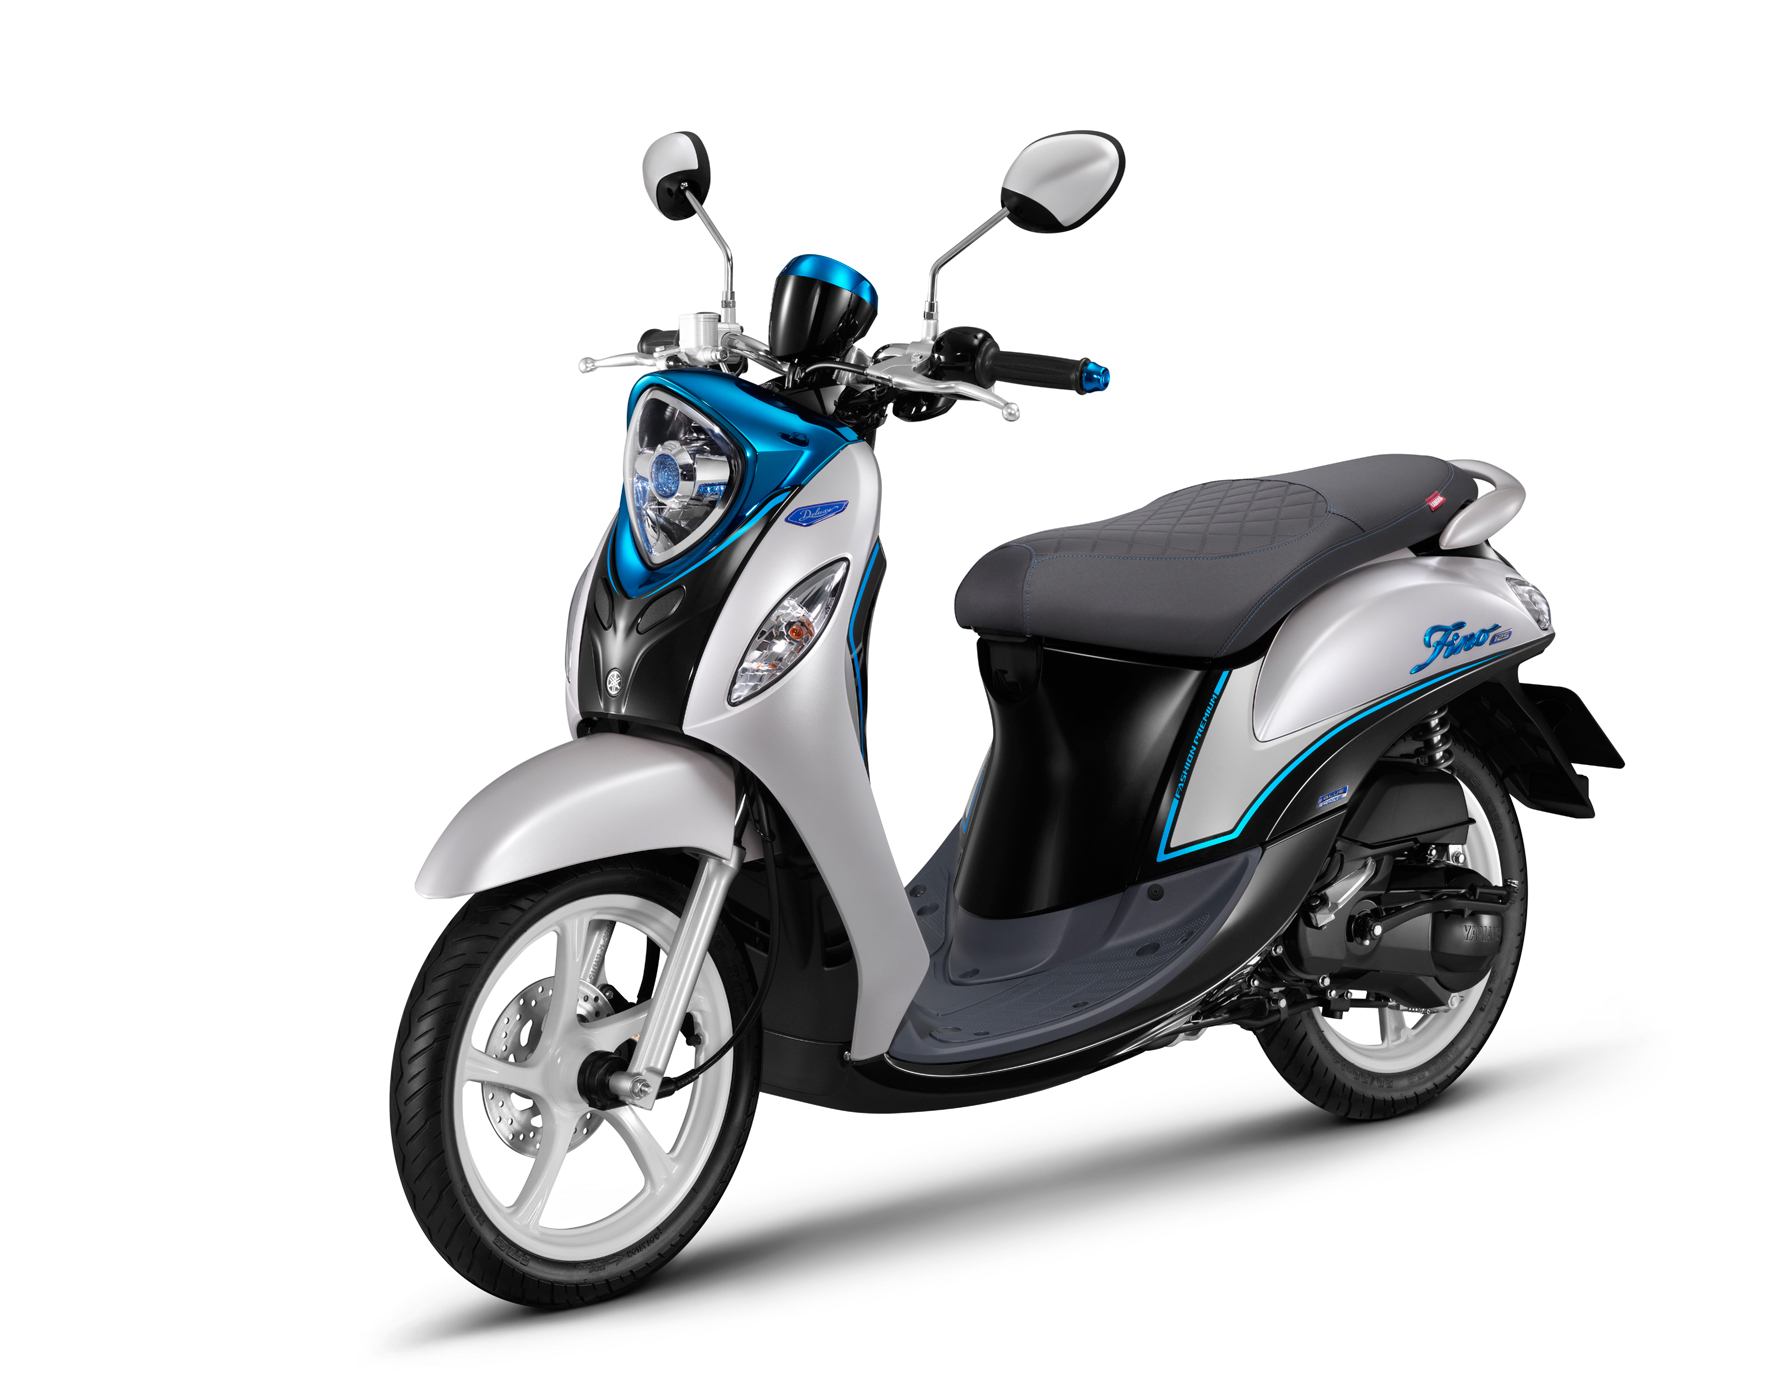 2022 Yamaha Fino 125 Will Use Blue Core Technology 